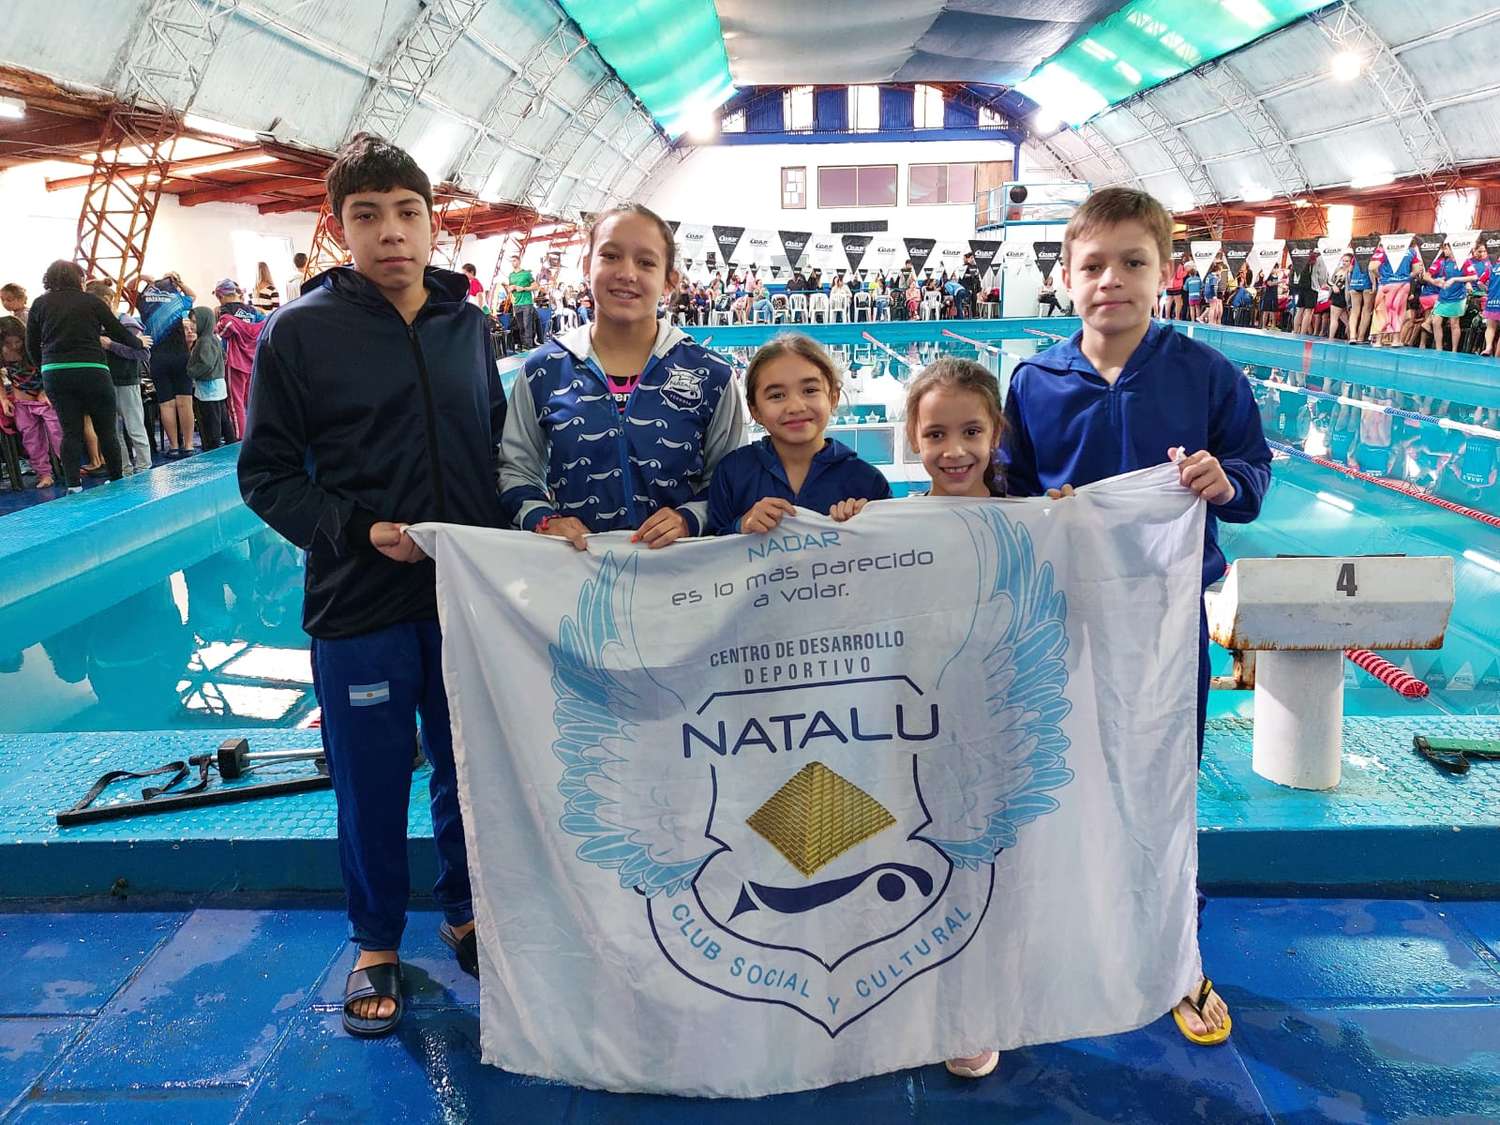 Natalú con excelente desempeño en torneo de natación en Posadas